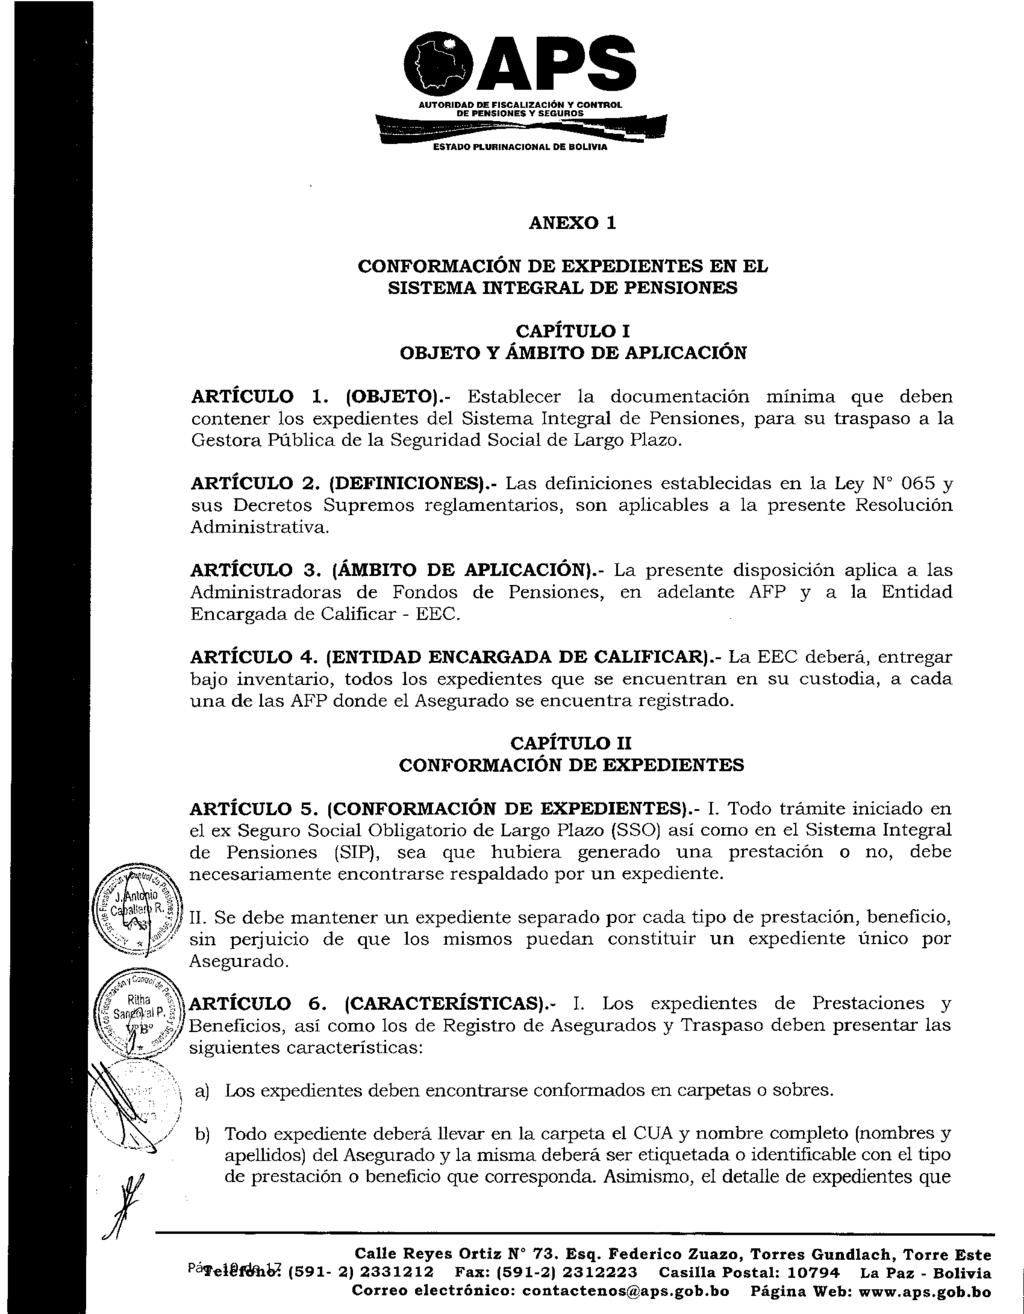 AUTORIDAD DE FISCALIZACIÓN Y CONTROL - DE PENSIONES Y SEGUROS ESTADO PLURINACIONAL DE BOLIVIA ANEXO 1 CONFORMACIÓN DE EXPEDIENTES EN EL SISTEMA INTEGRAL DE PENSIONES CAPÍTULO I OBJETO Y ÁMBITO DE